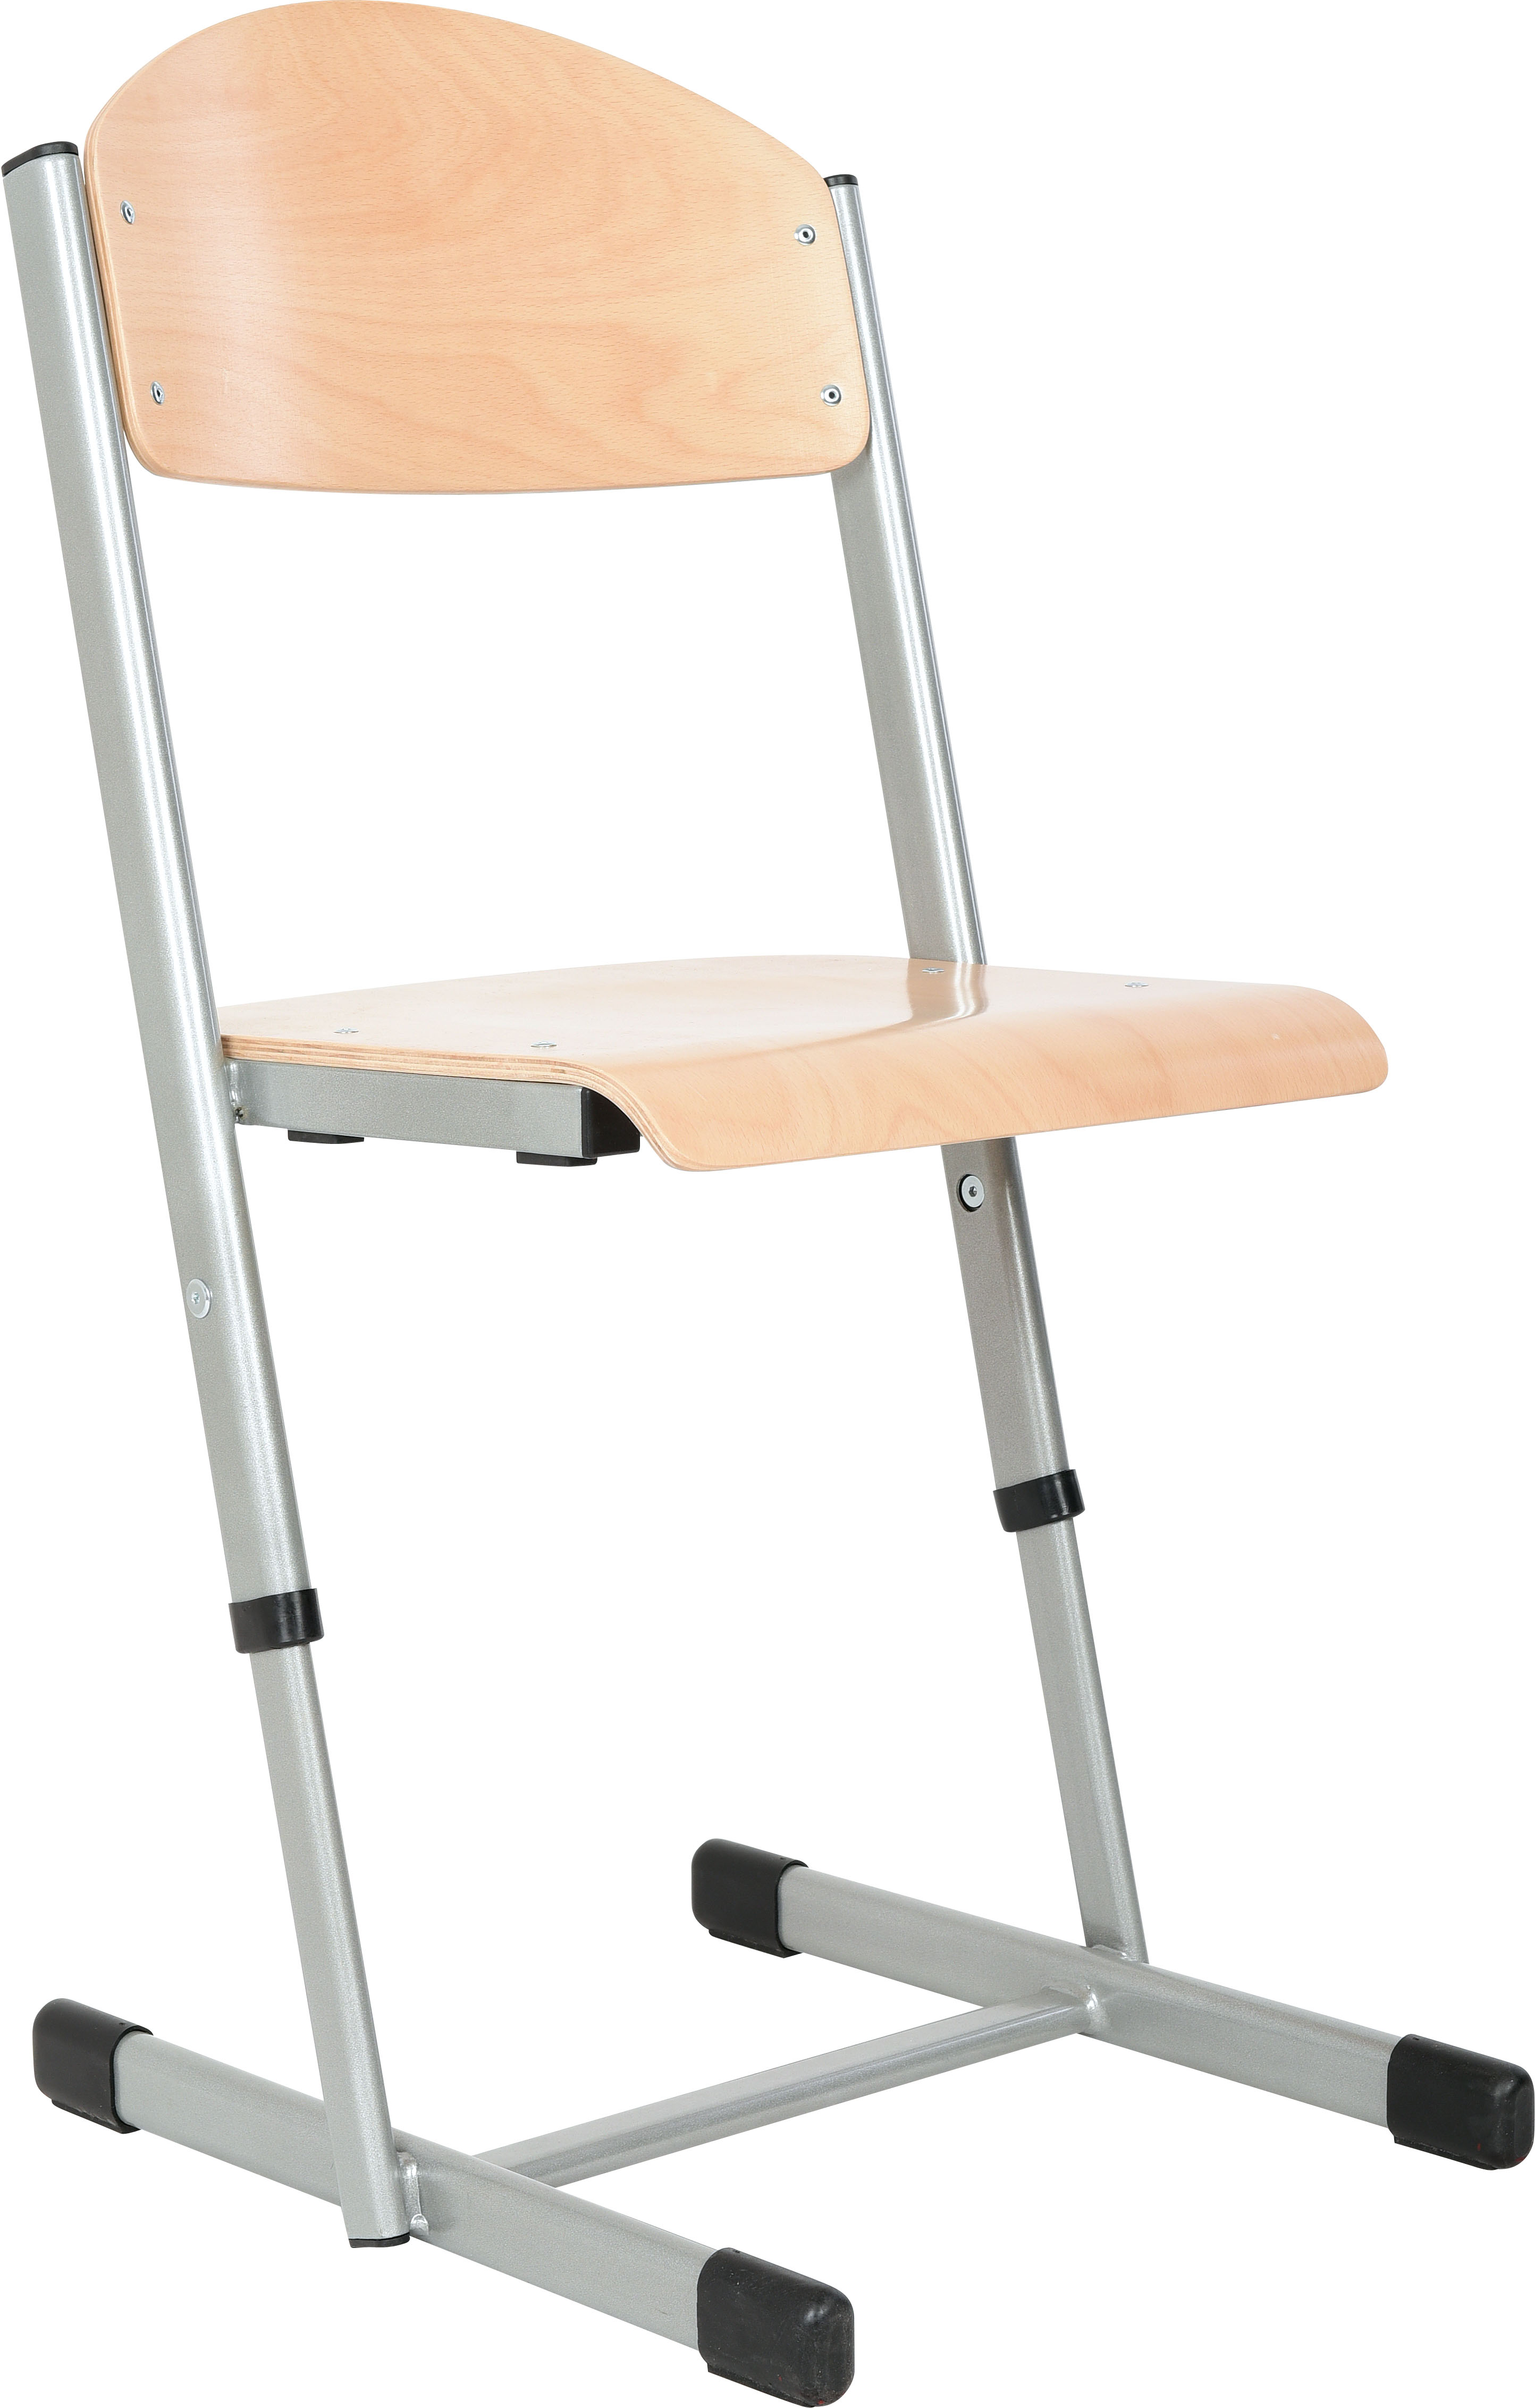 Tafels, stoelen & bankjes: T stoel in hoogte verstelbaar | Tangara groothandel - voor kinderopvang